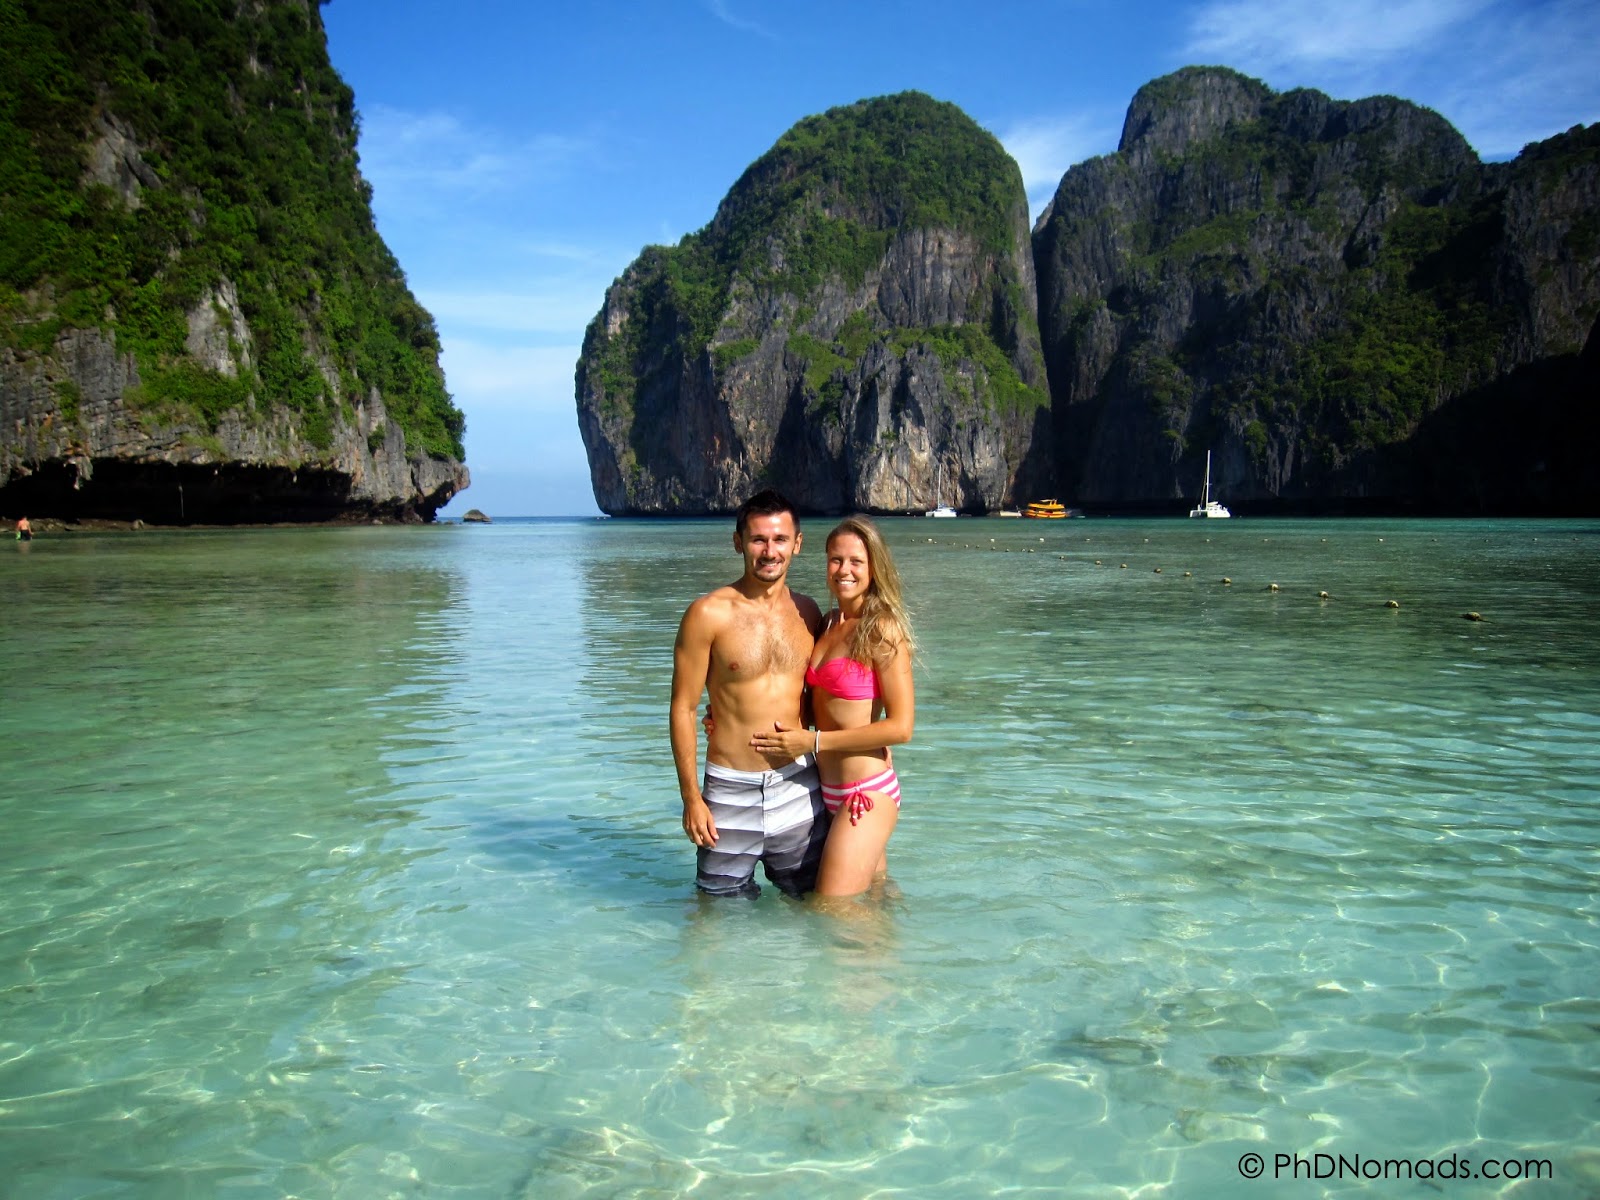 Таиланд: где лучше отдыхать летом: лучшие курорты страны - gkd.ru